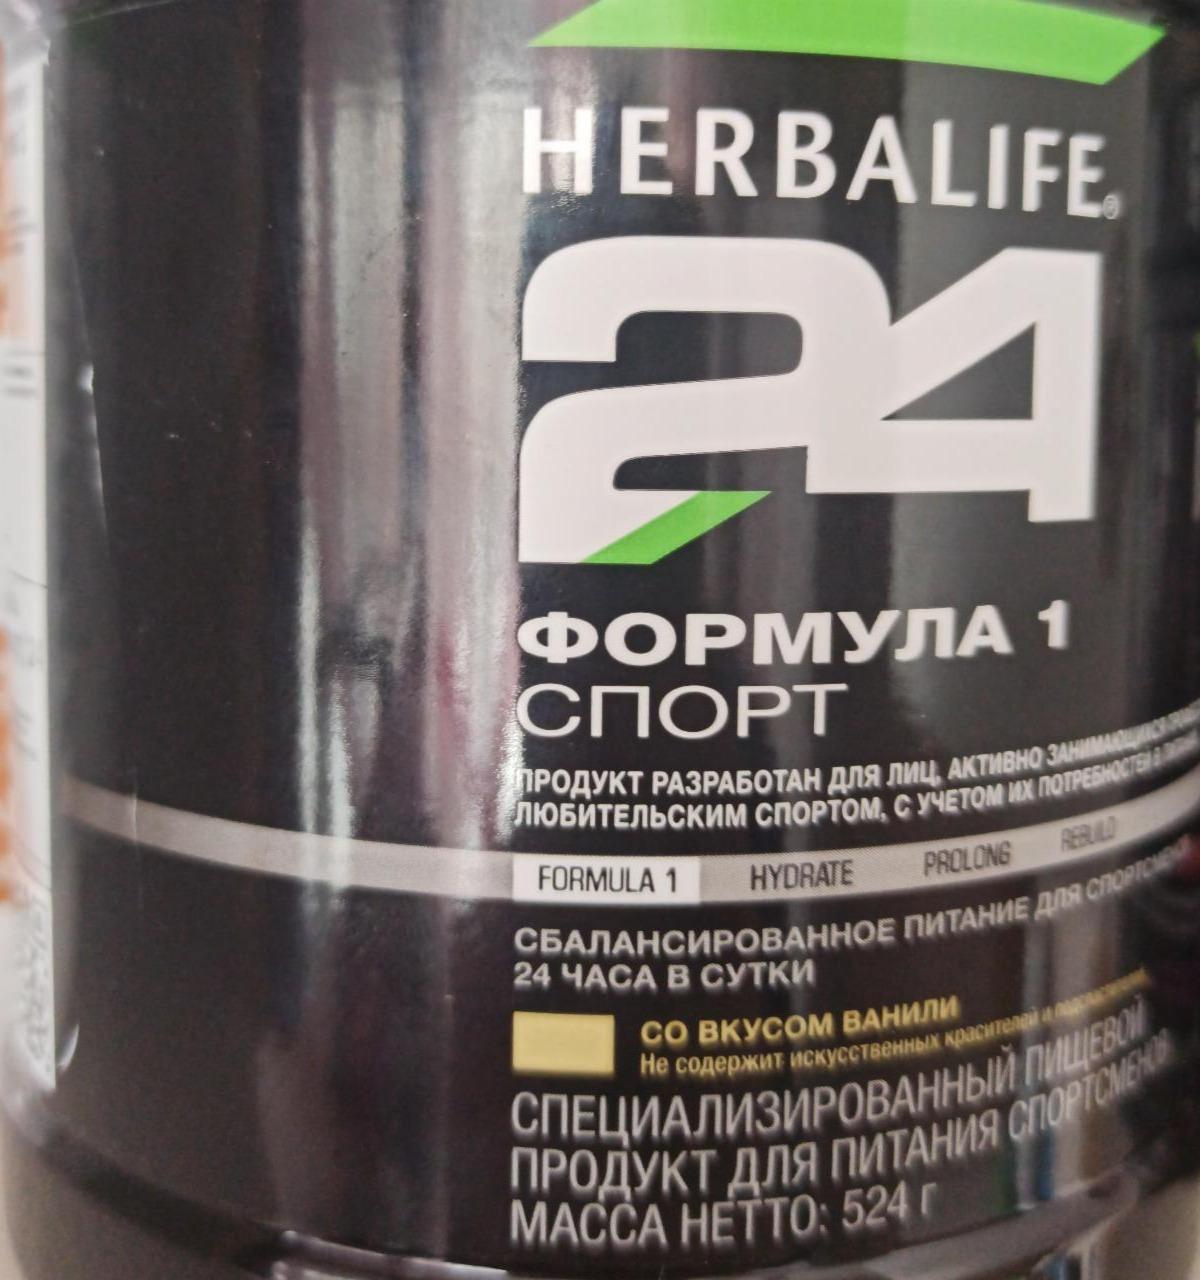 Фото - сбалансированное питание для спортсменов Гербалайф Ф1 спорт Herbalife